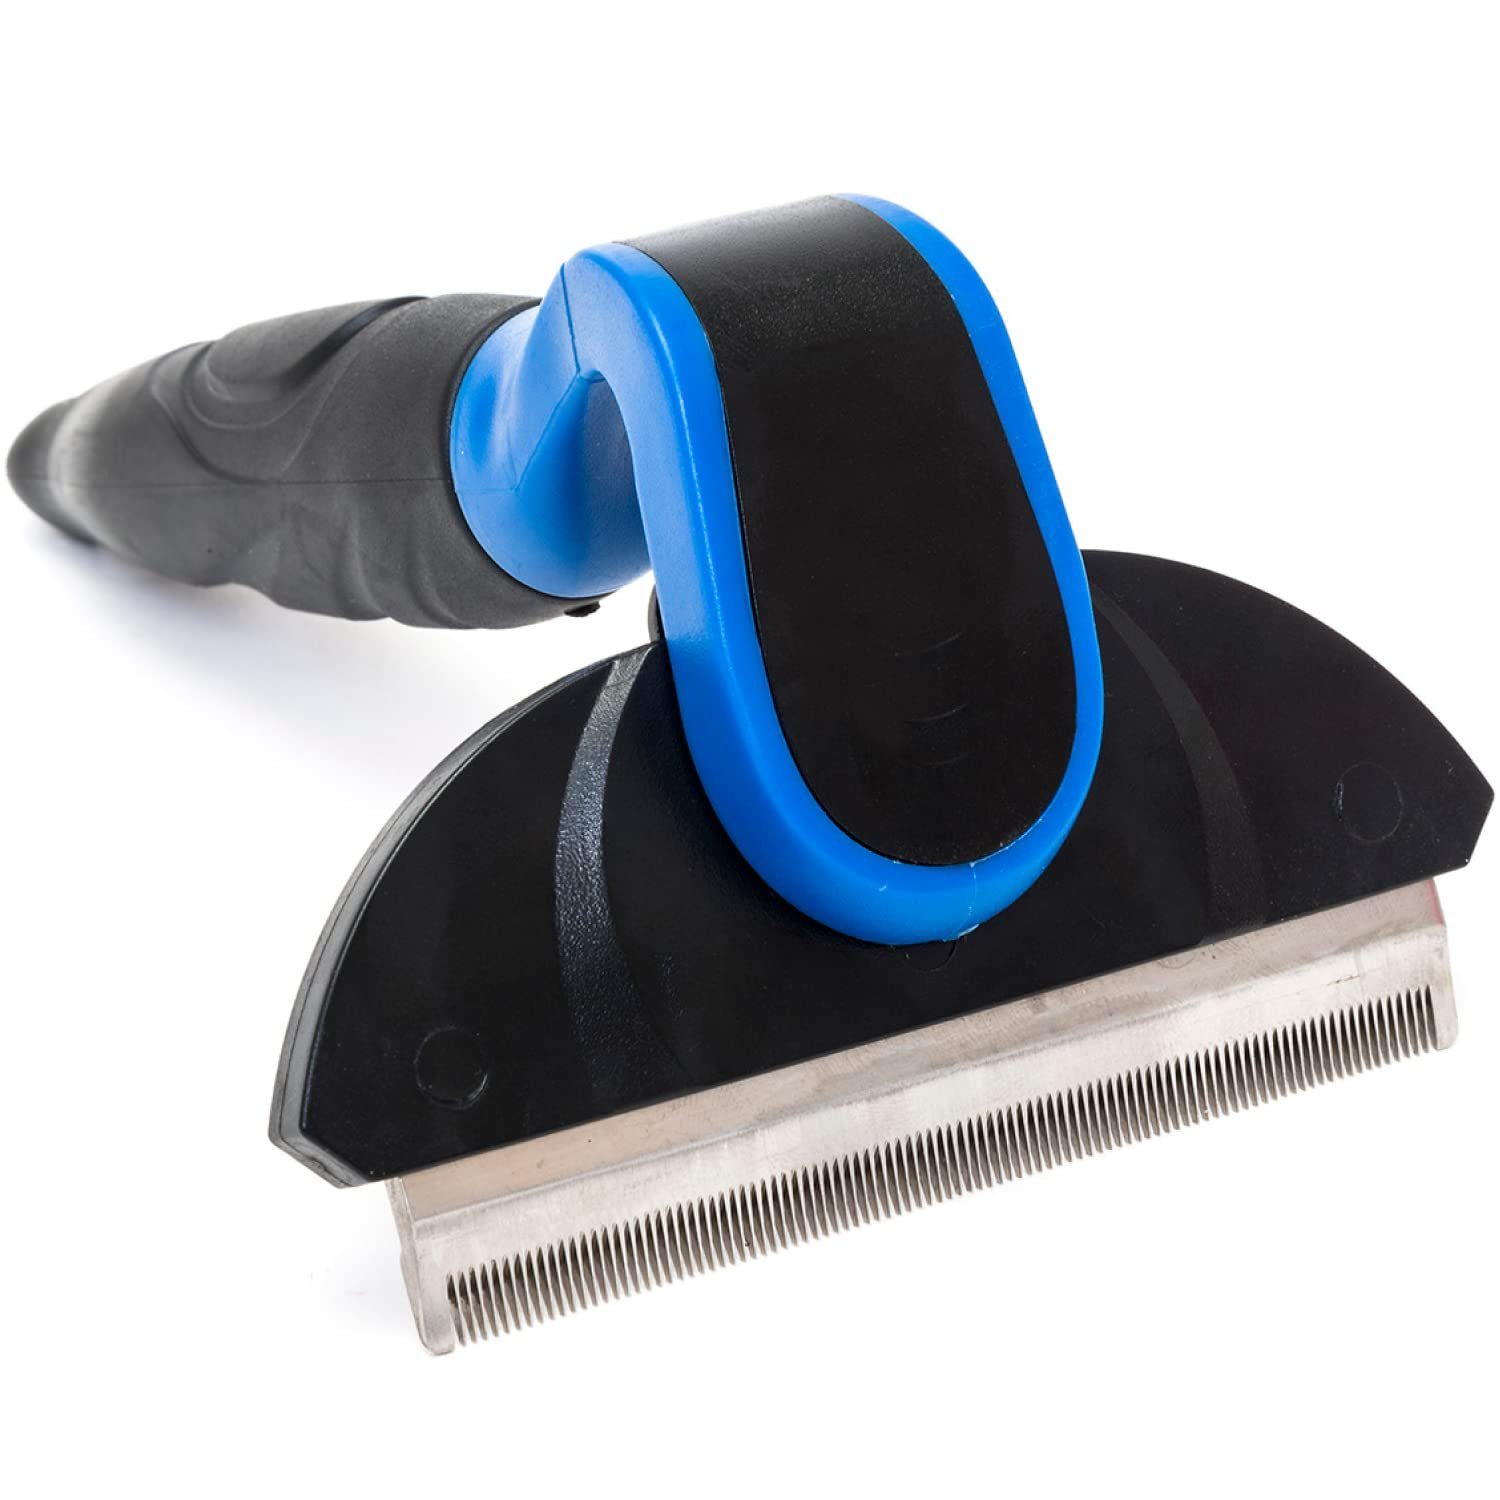 Happilax Fellbürste Hundebürste zur Fellpflege, Entfernen von Unterwolle u. Haaren, (1-tlg), Blau-Schwarz 100 Mm Metall